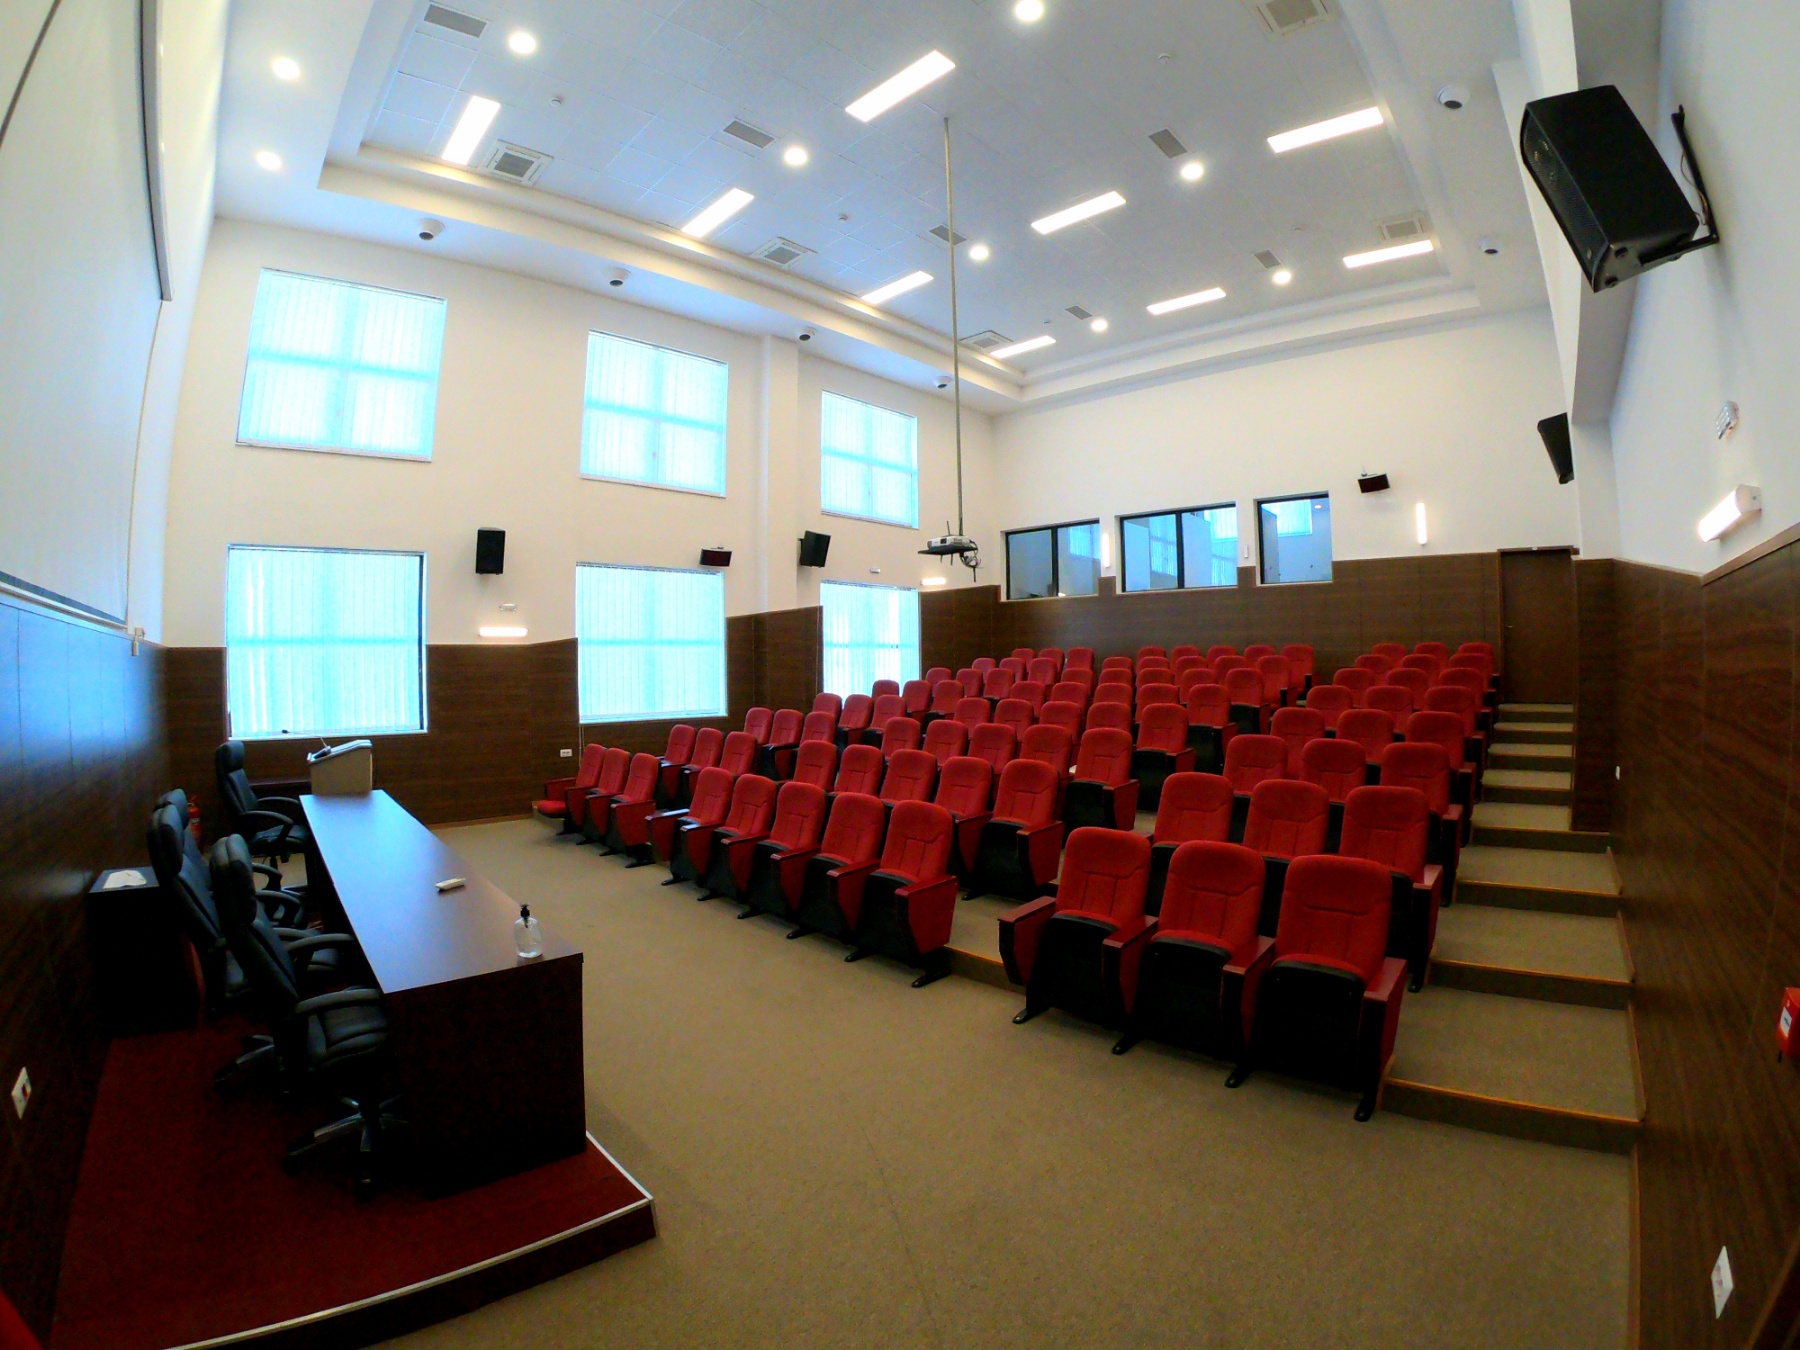 Universiteti I Mitrovicës “Isa Boletini” Organizon Konferencën Me Titull “Punëtoria E Dytë Ndërkombëtare” (2nd International Workshop), Në Kuadër Të Projektit “DualAFS”